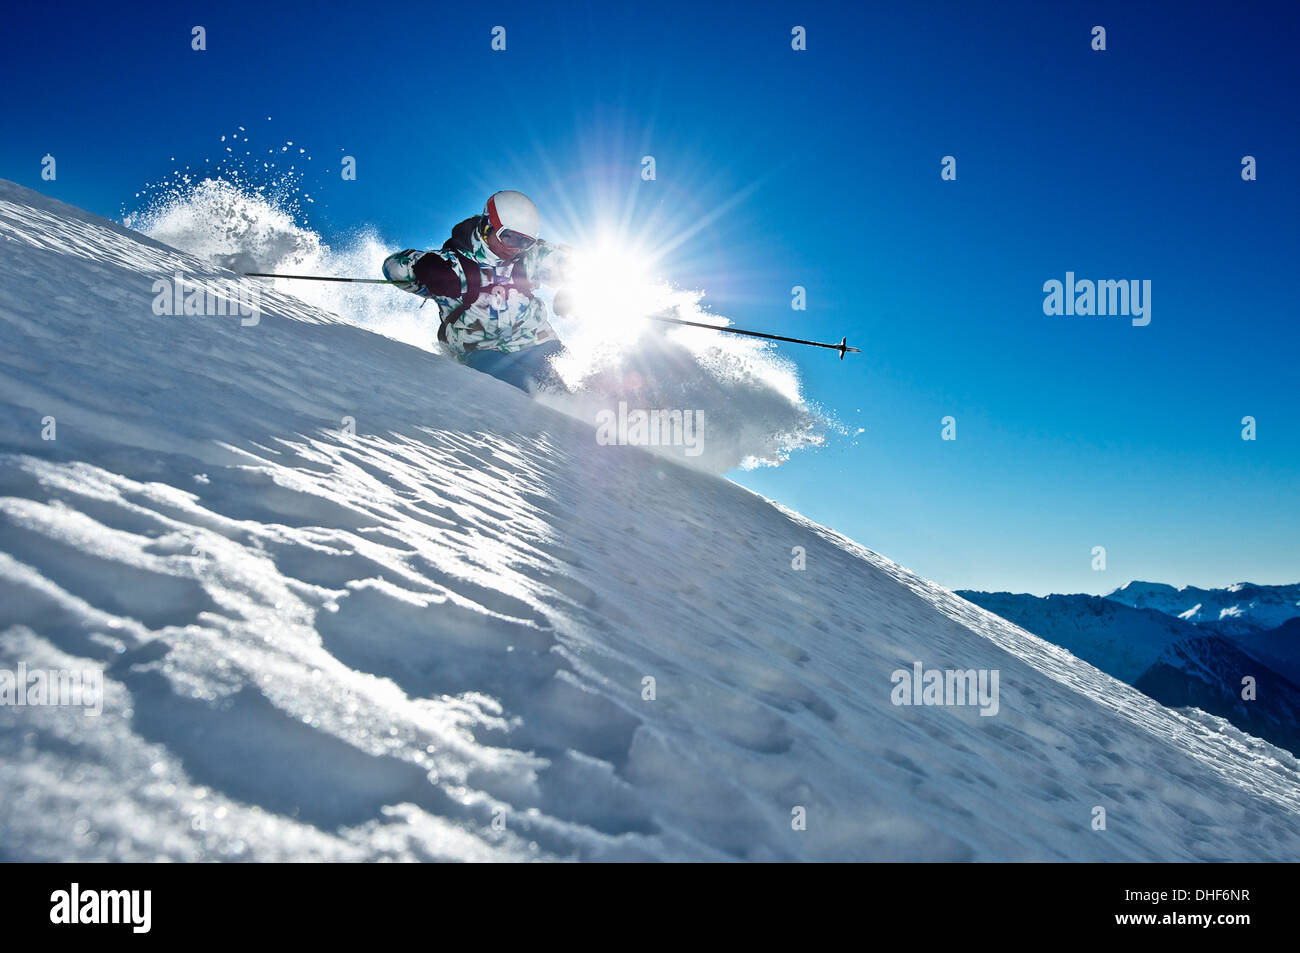 Man skiing, Verbier, Switzerland Stock Photo